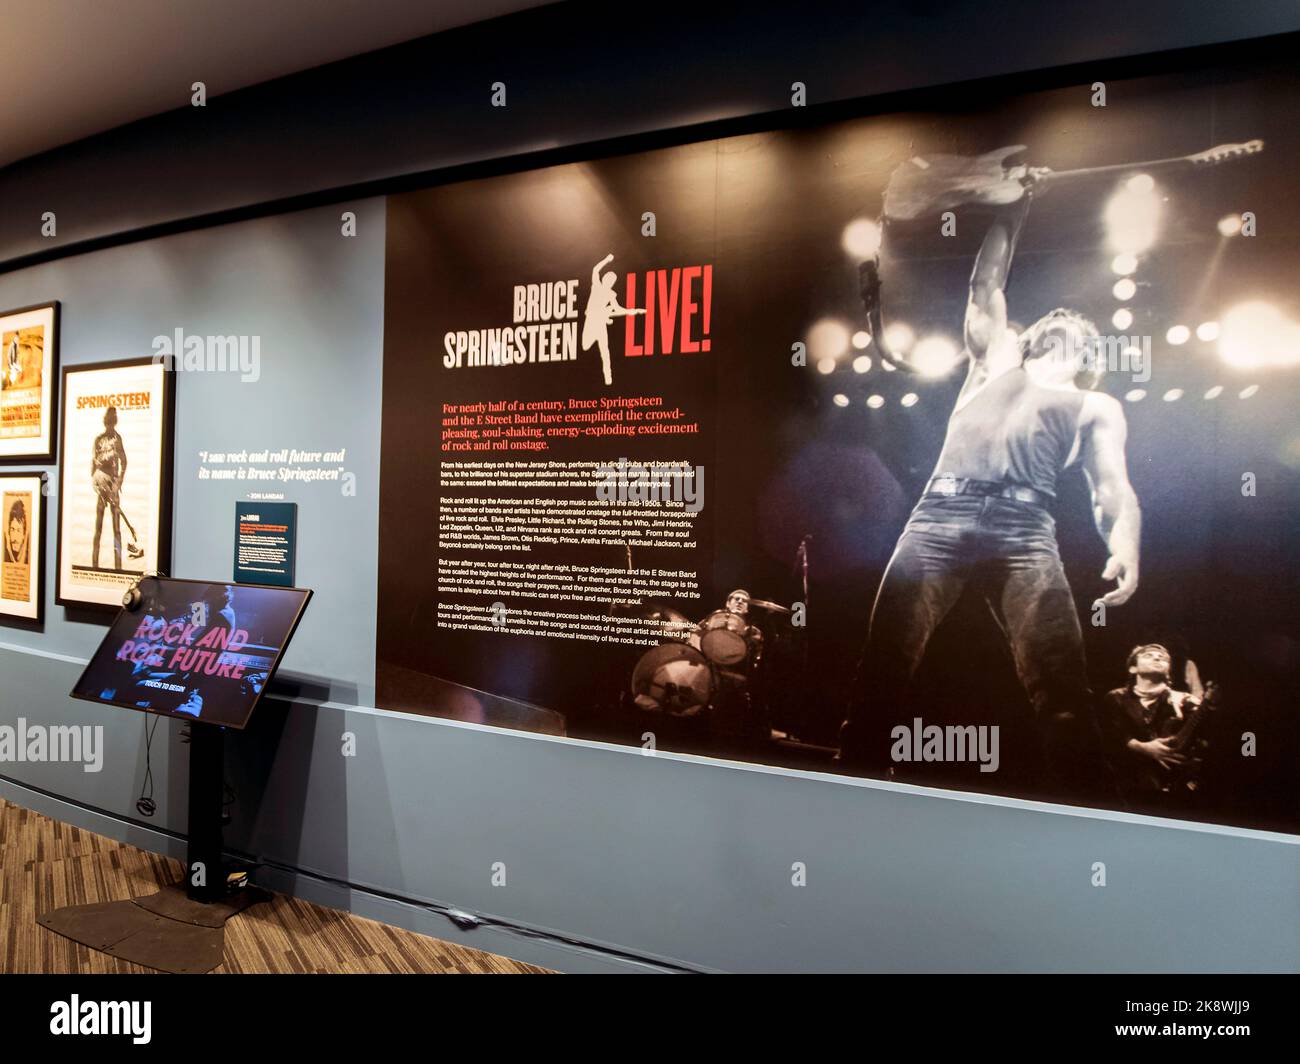 24 de octubre de 2022 - Los Angeles, California, EE.UU. - Bruce Springsteen  Live! Del Museo GRAMMY La exposición presenta 49 años de artefactos de la  carrera de ''The Boss,'', Bruce Springsteen: